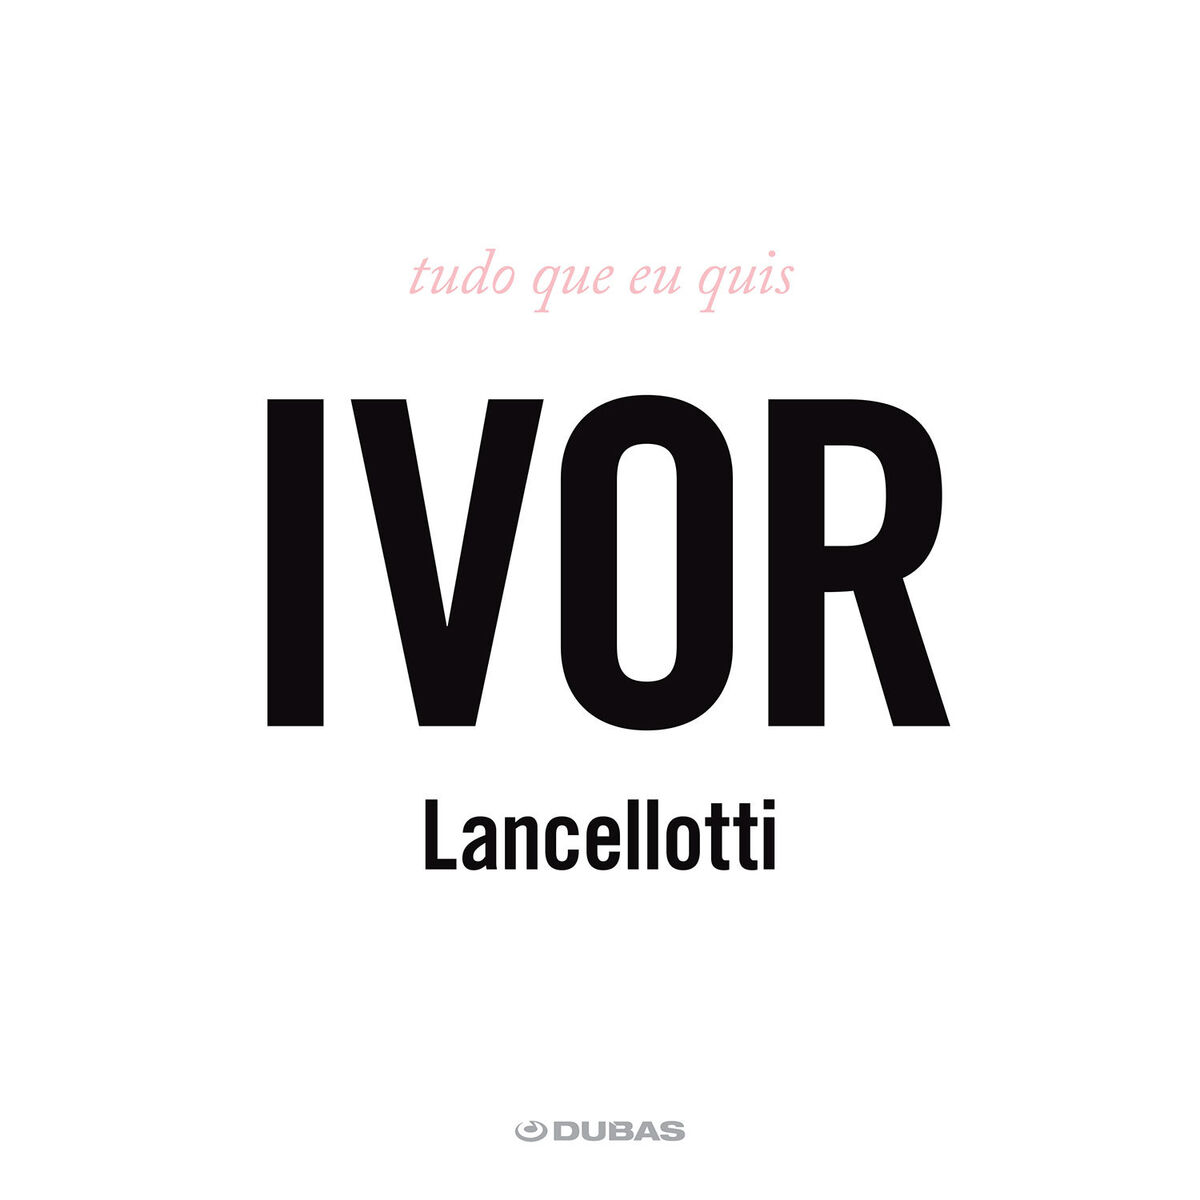 Ivor Lancellotti - Ivor Lancellotti: letras e músicas | Deezer